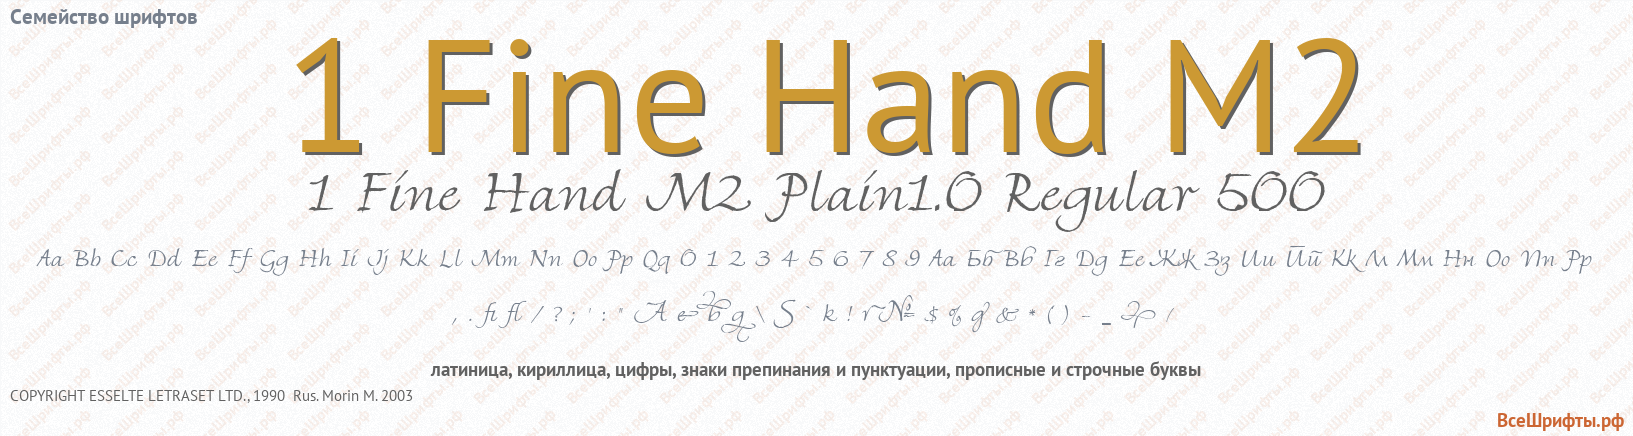 Семейство шрифтов 1 Fine Hand M2